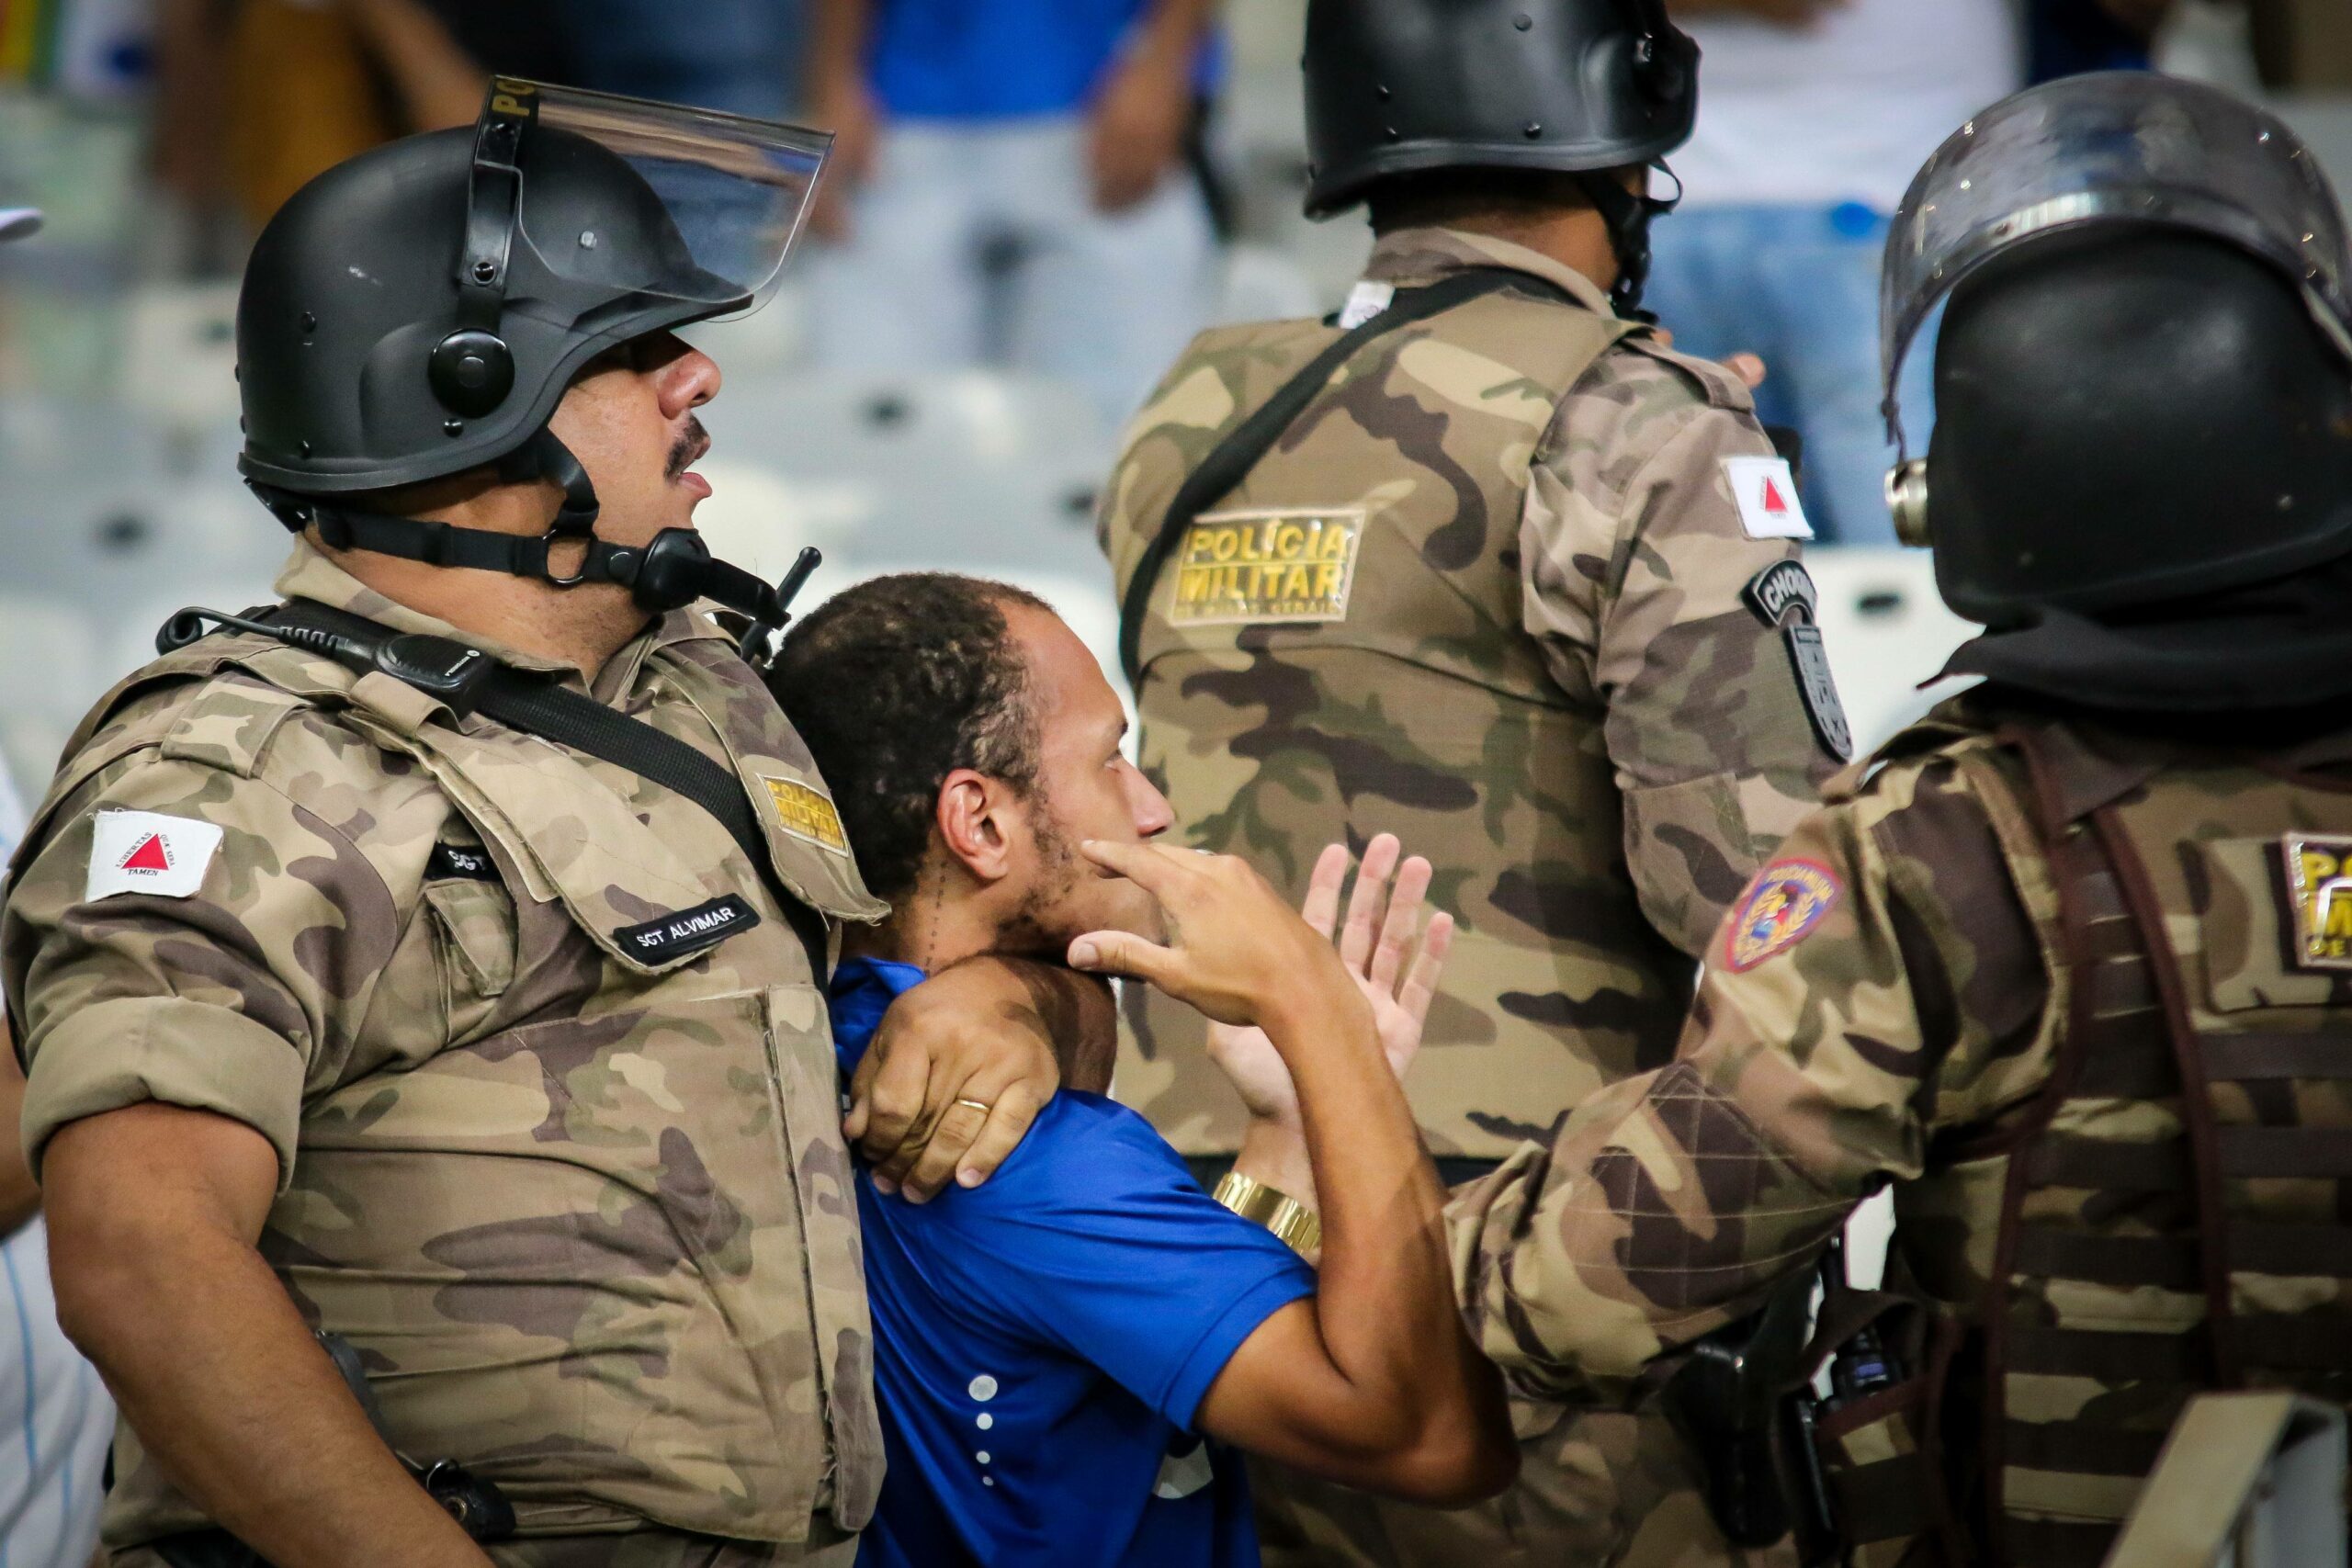 Polzeieinsatz beim Fußballspiel in Argentinien.